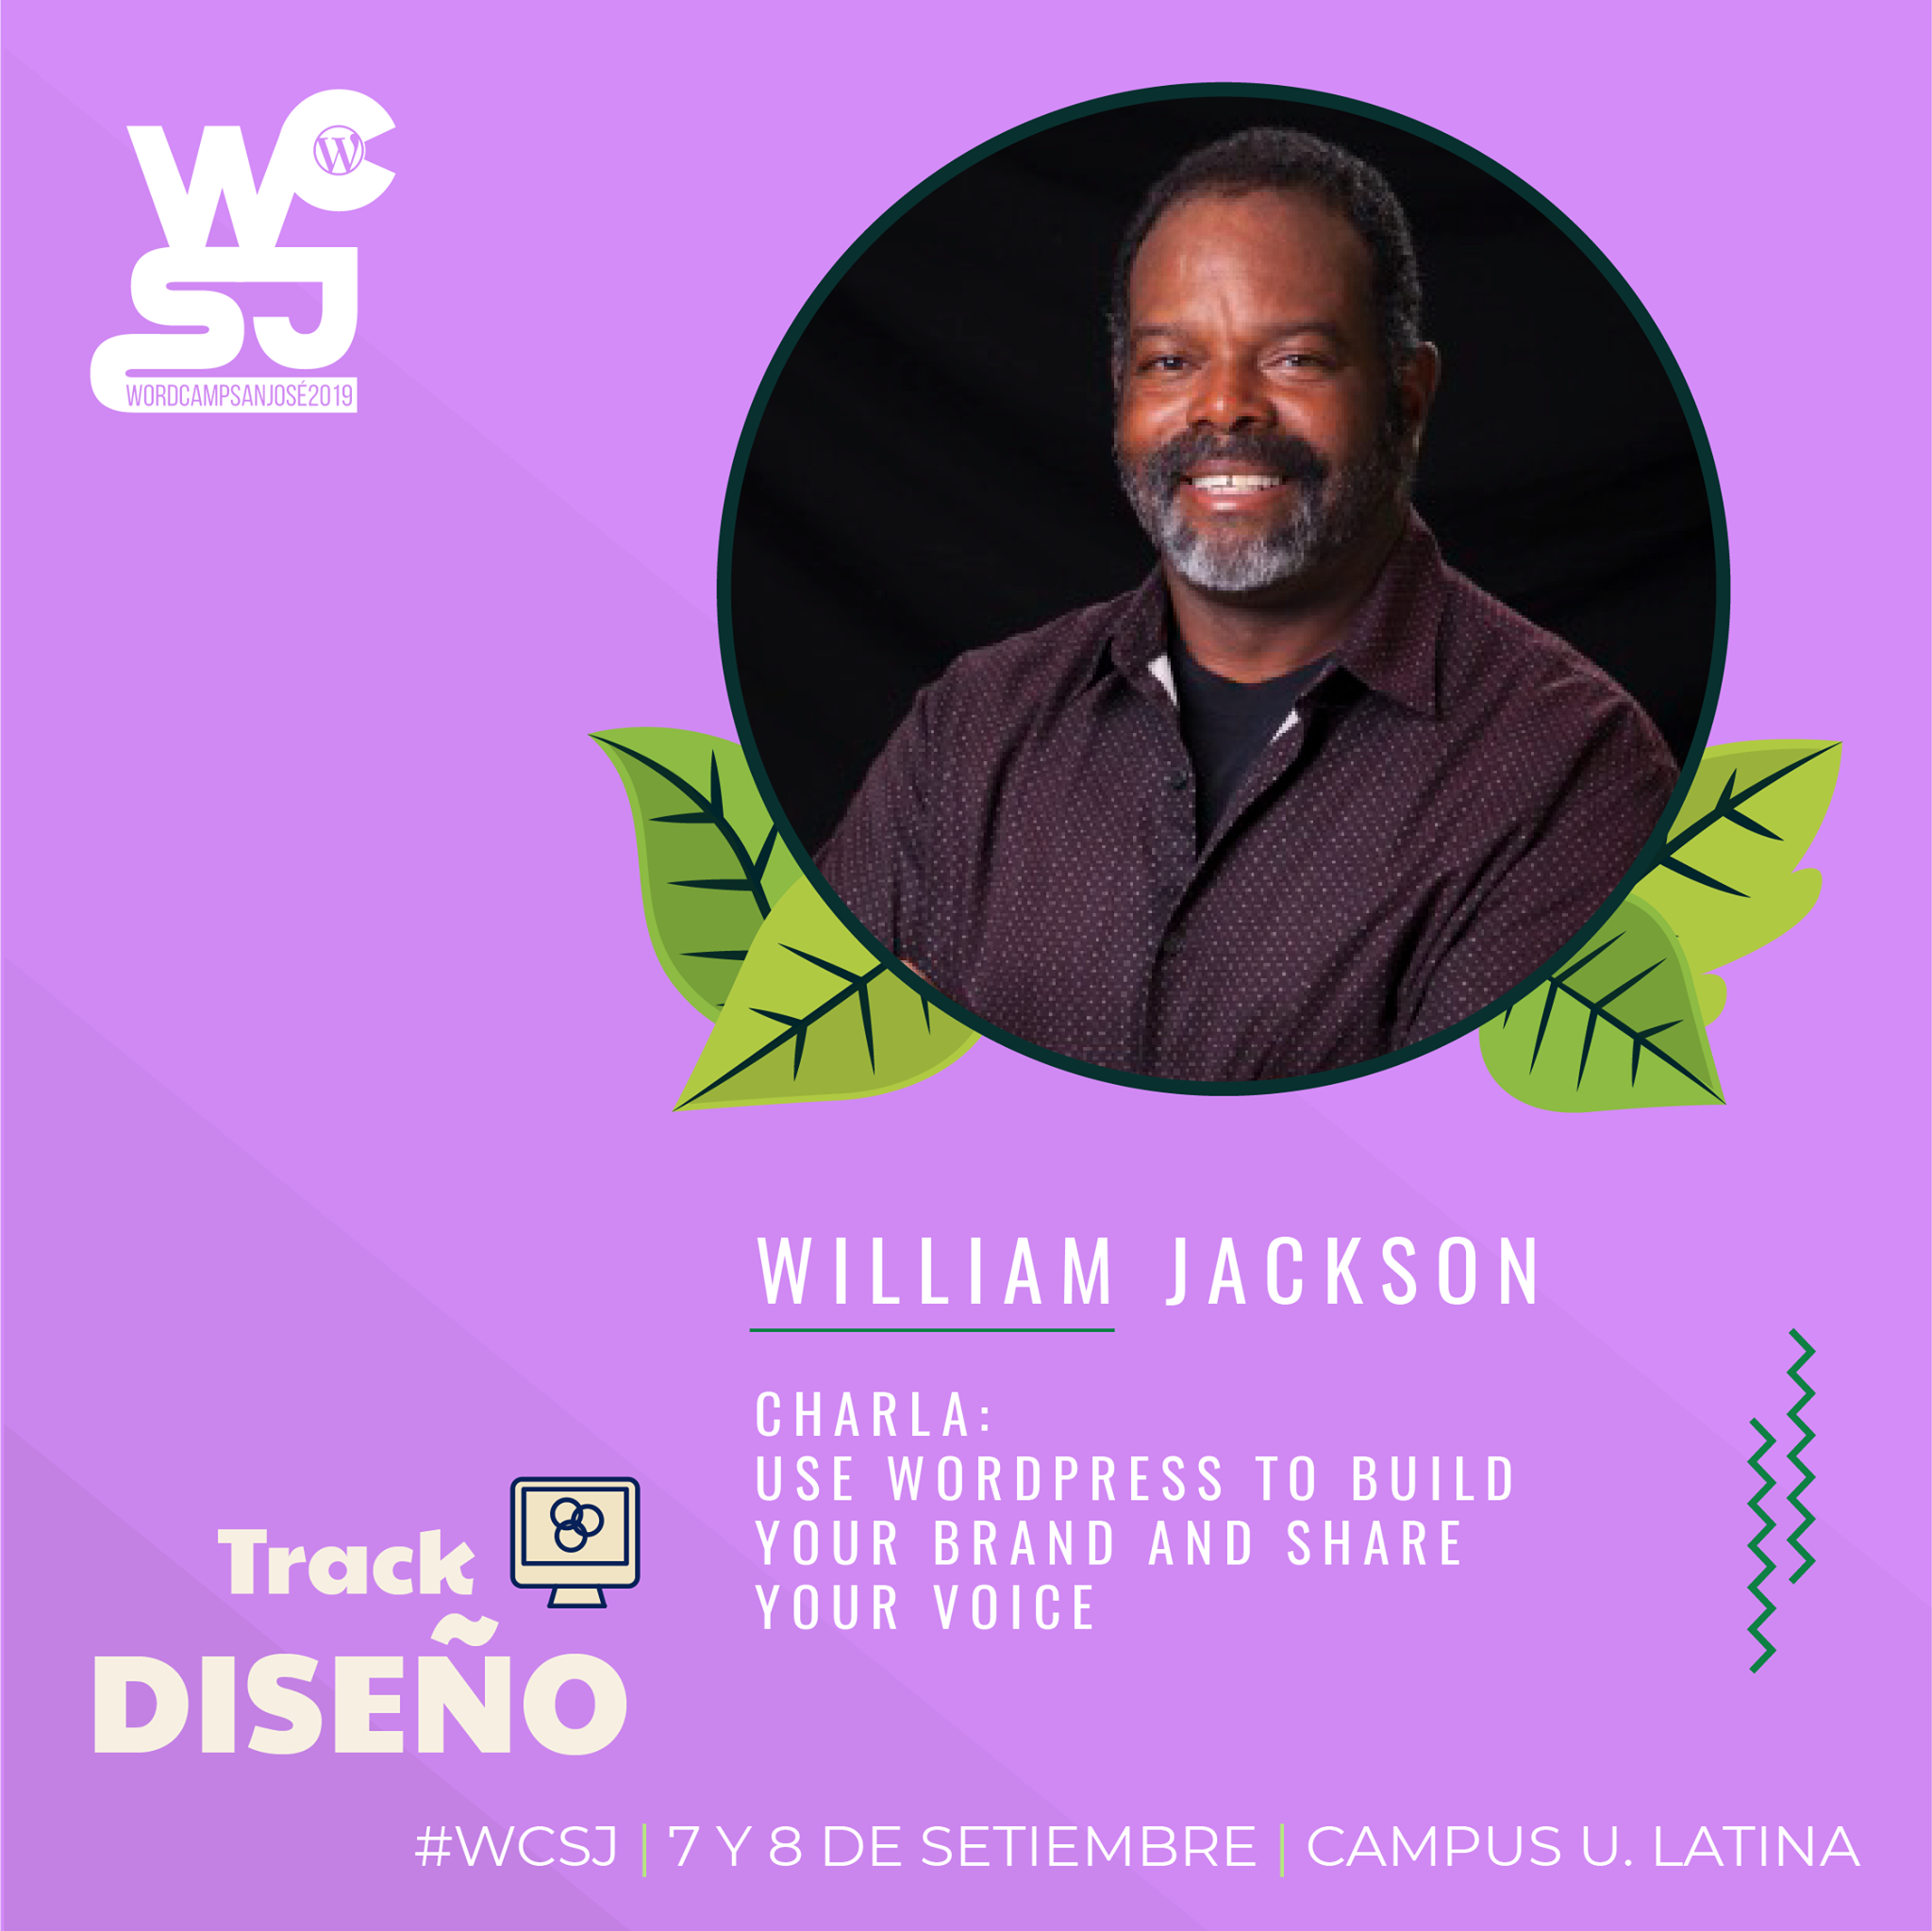 Wiliam Jackson ponente del WordCamp Sj 2019